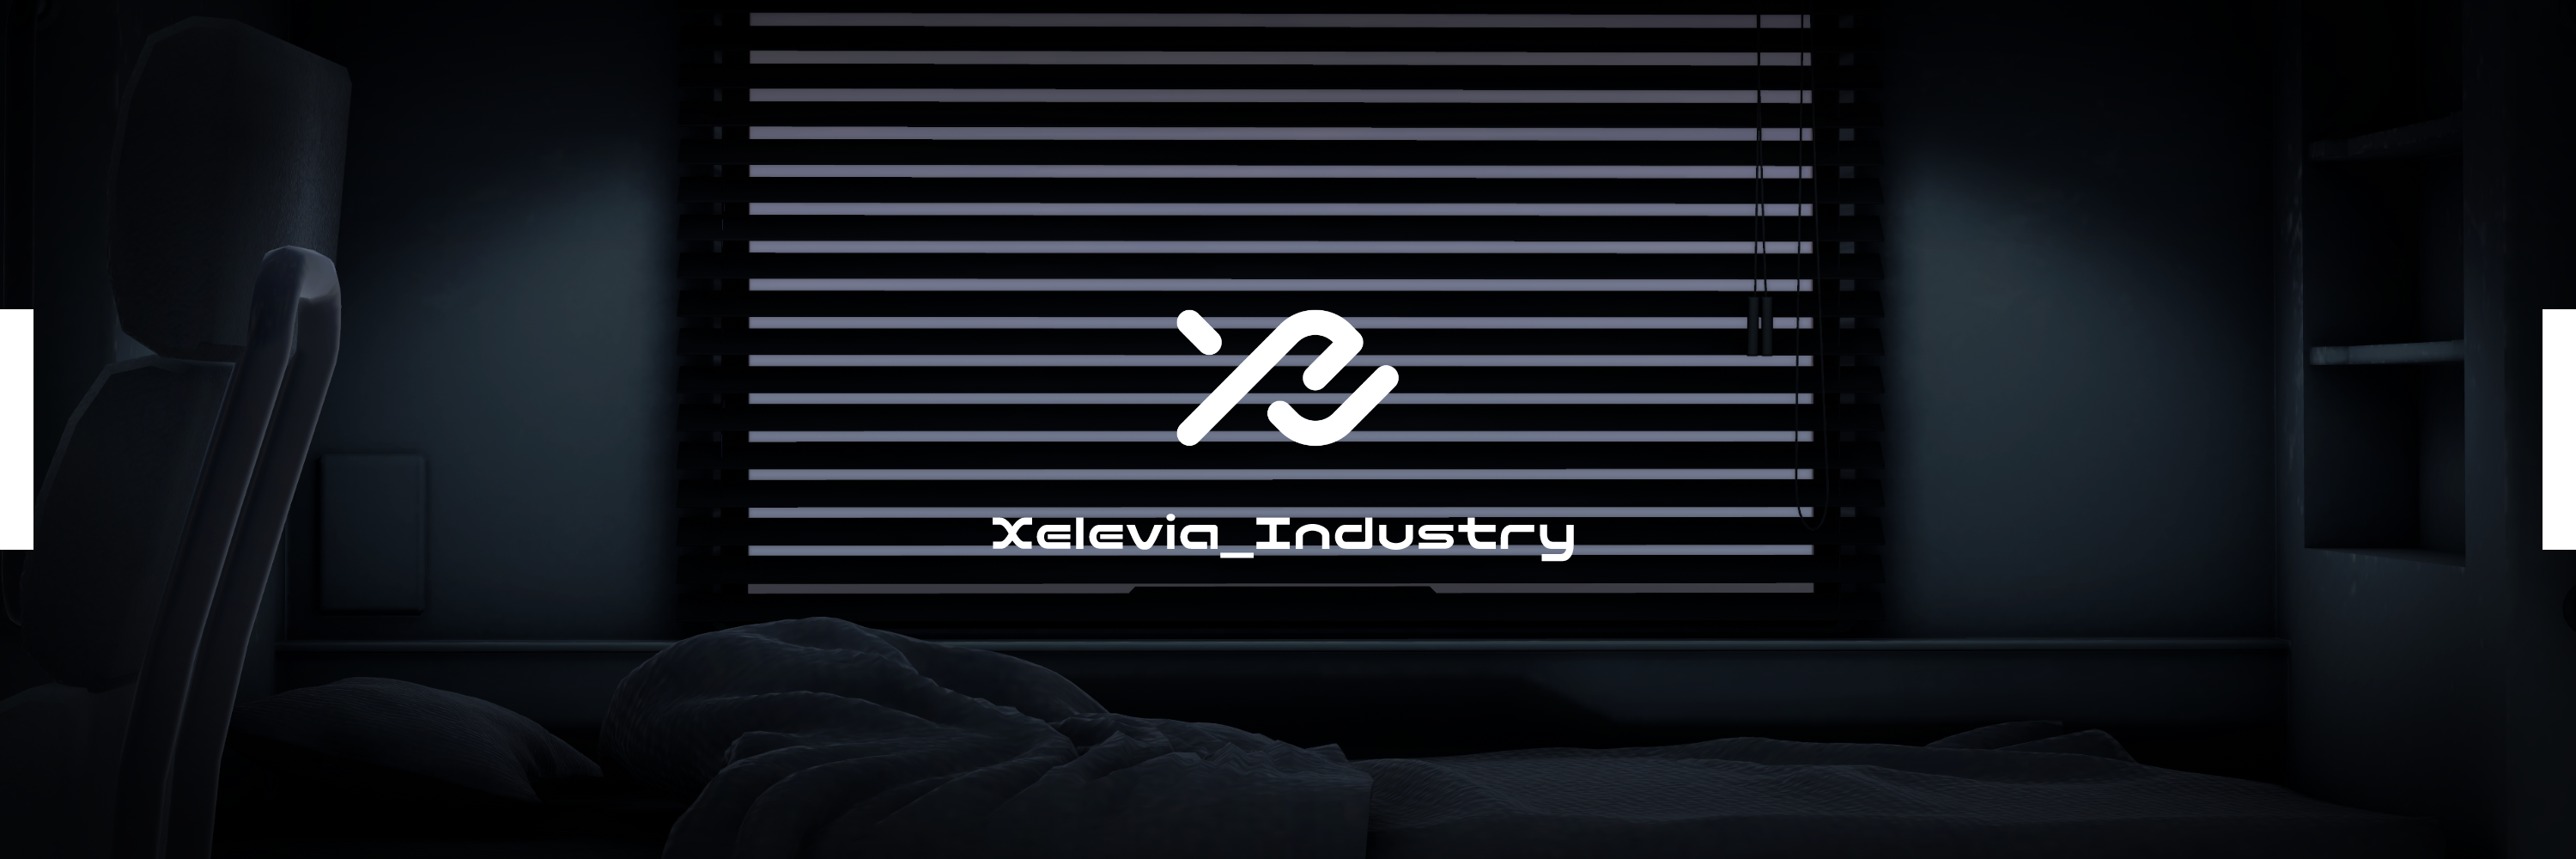 Xelevia_Industry